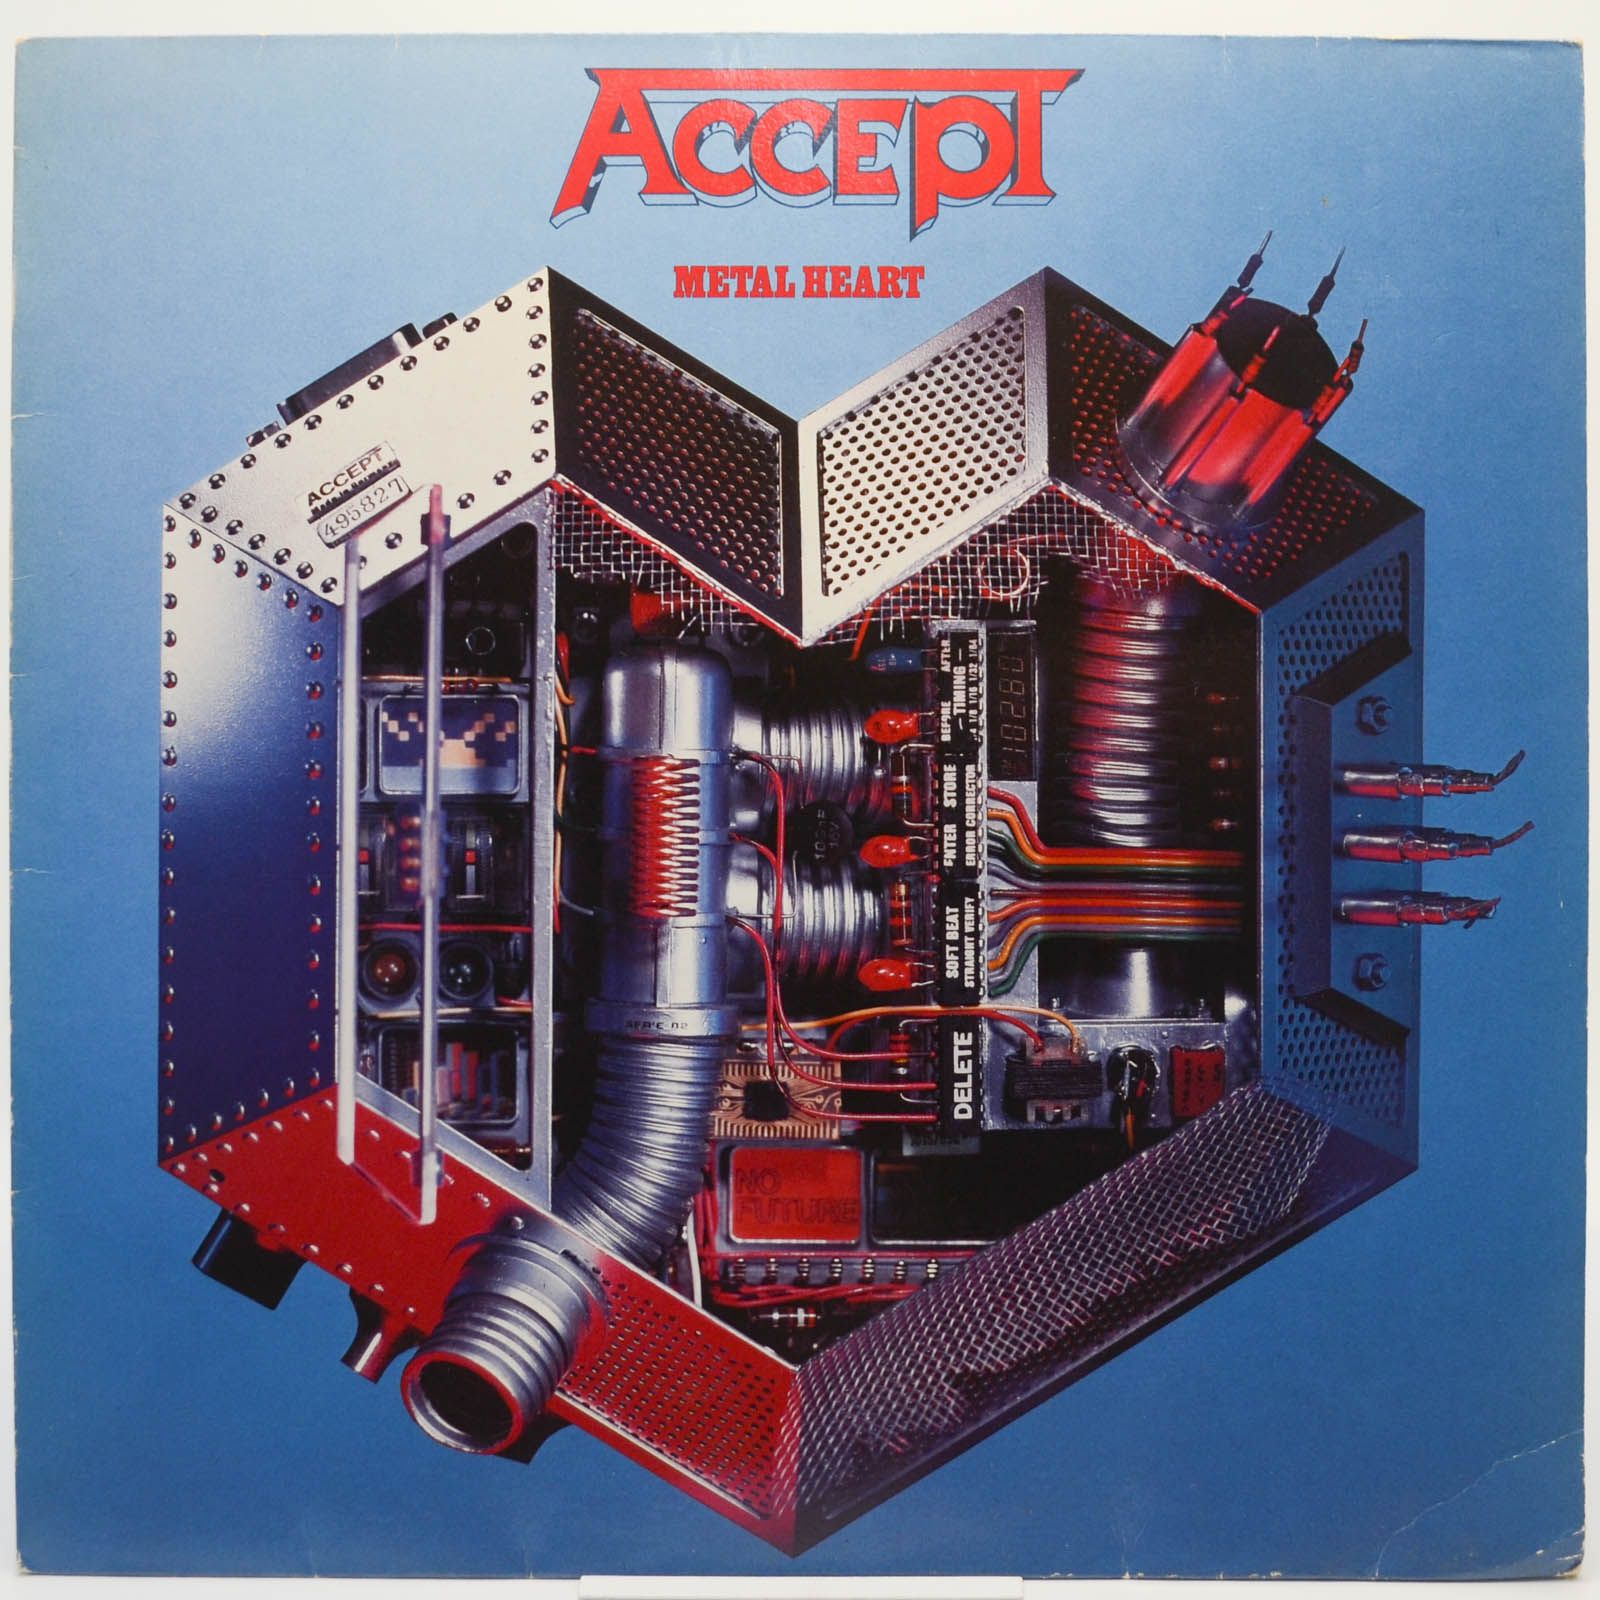 Accept — Metal Heart, 1985